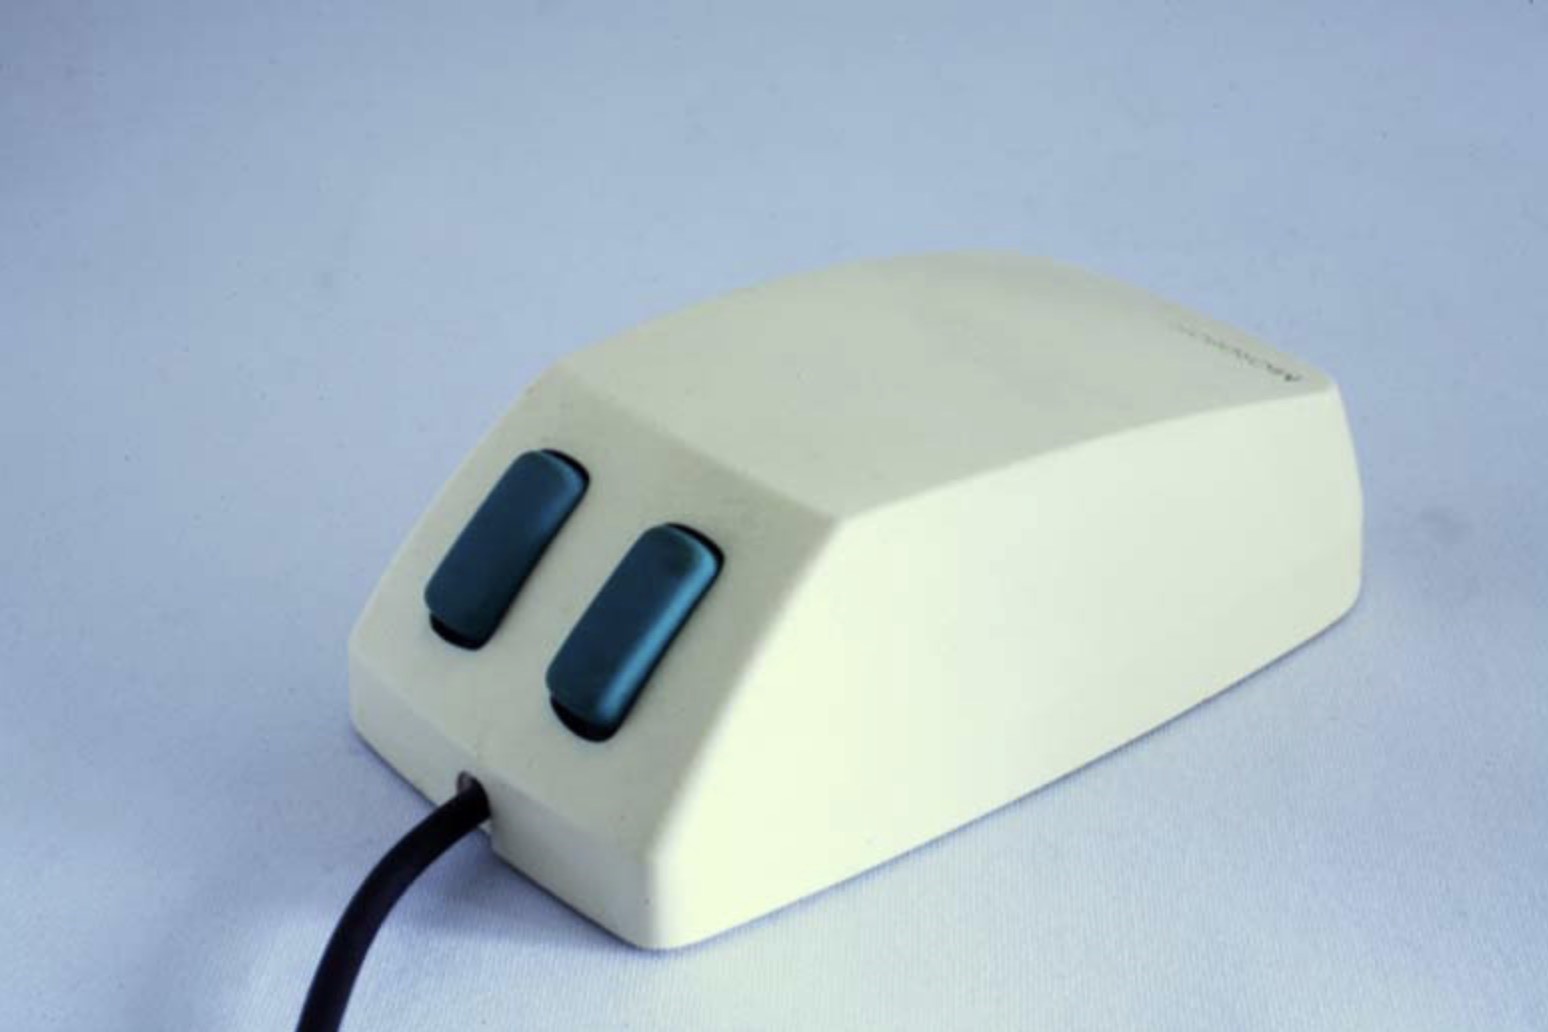 Con chuột máy tính đầu tiên của Microsoft được bán với giá 195 USD tại thời điểm năm 1983. Ảnh: Neowin